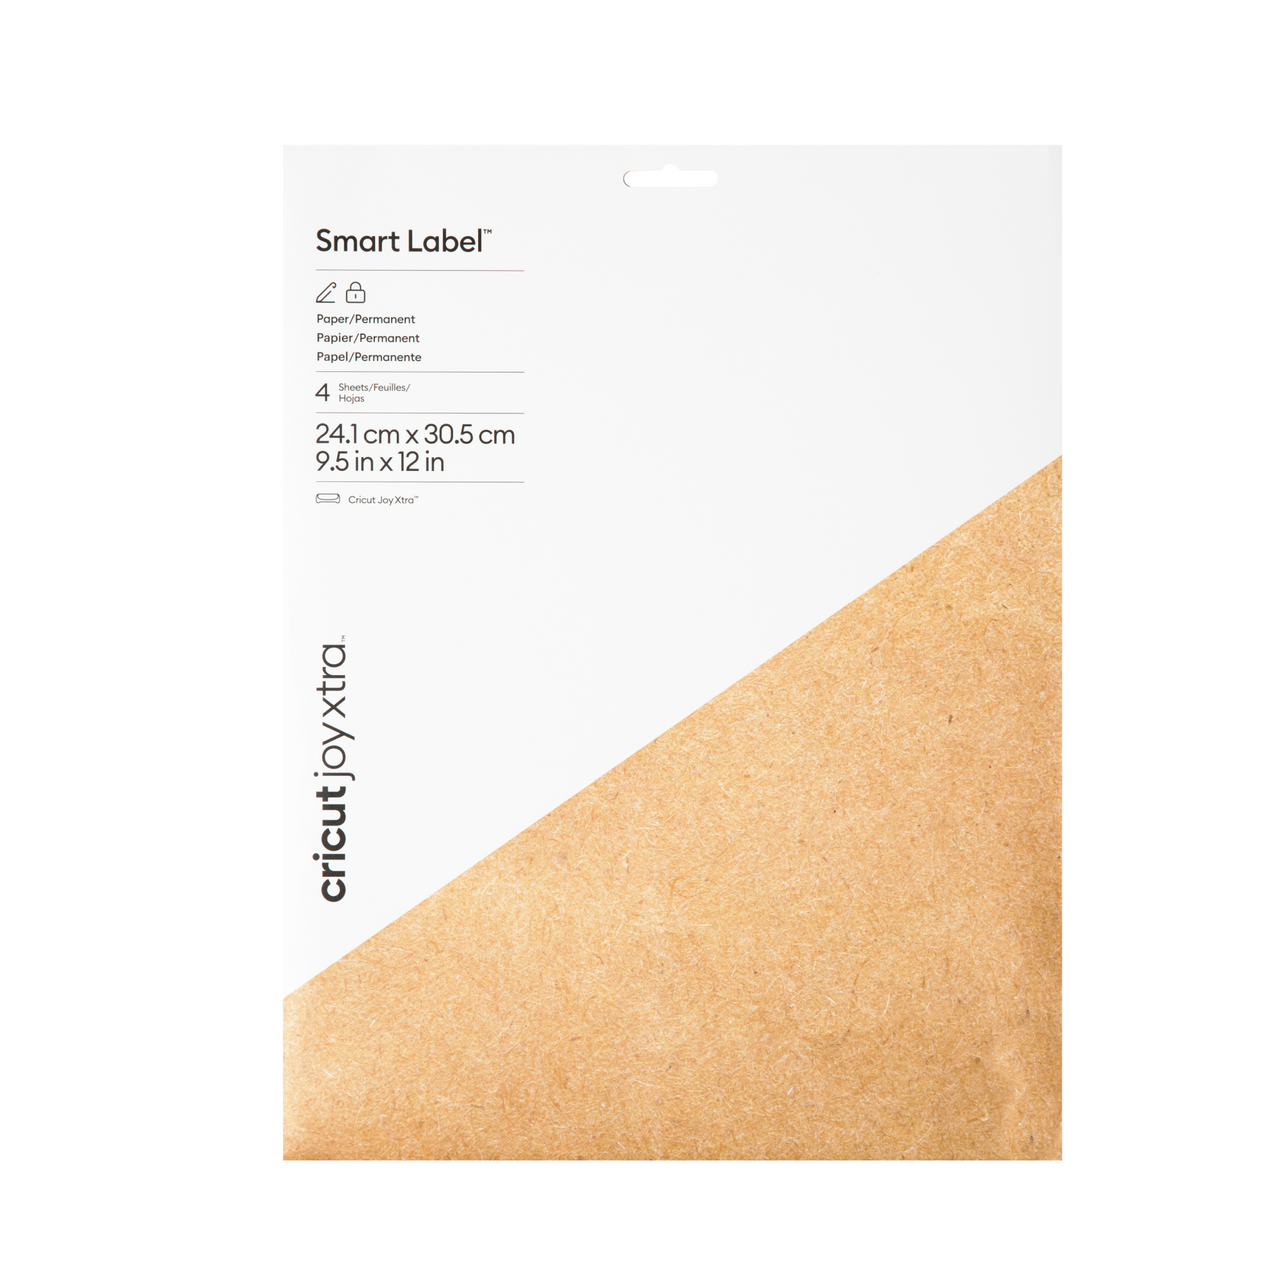 Cricut Joy Xtra Smart Label Paper Permanent 4 ct